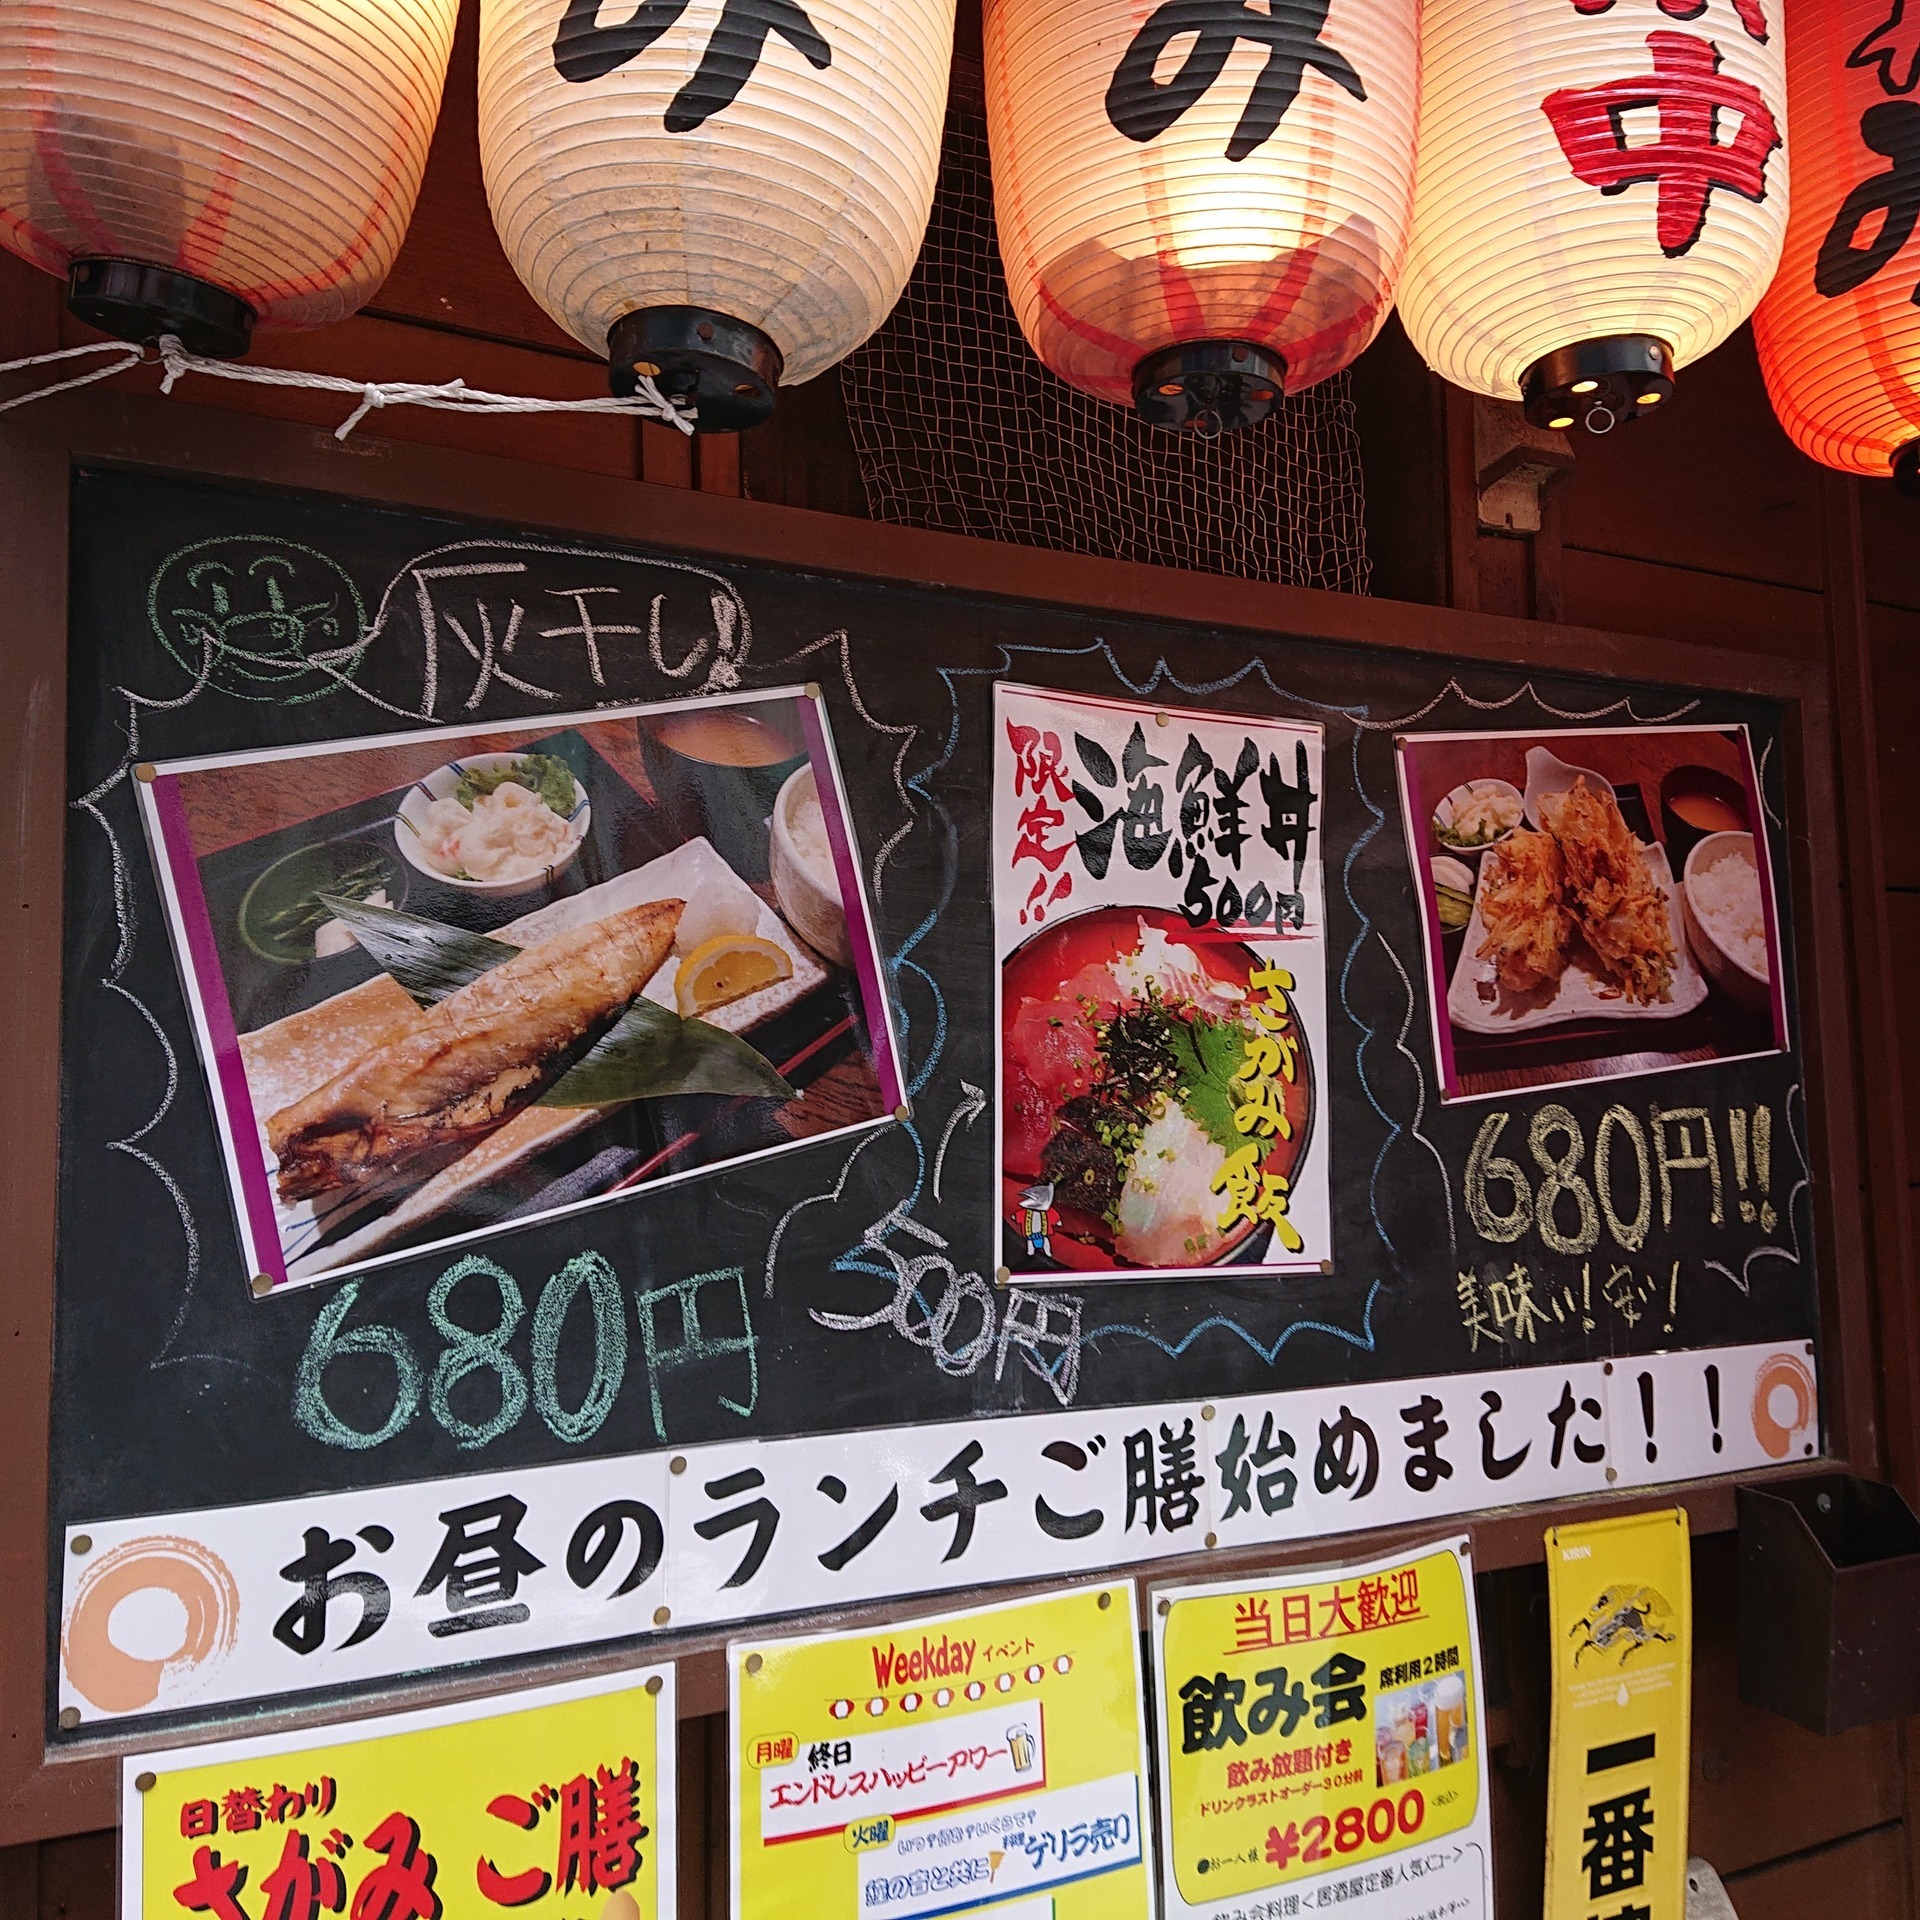 さがみでワンコイン海鮮丼 横浜駅周辺 時々あちらこちら 孤独のワンコインランチ日記